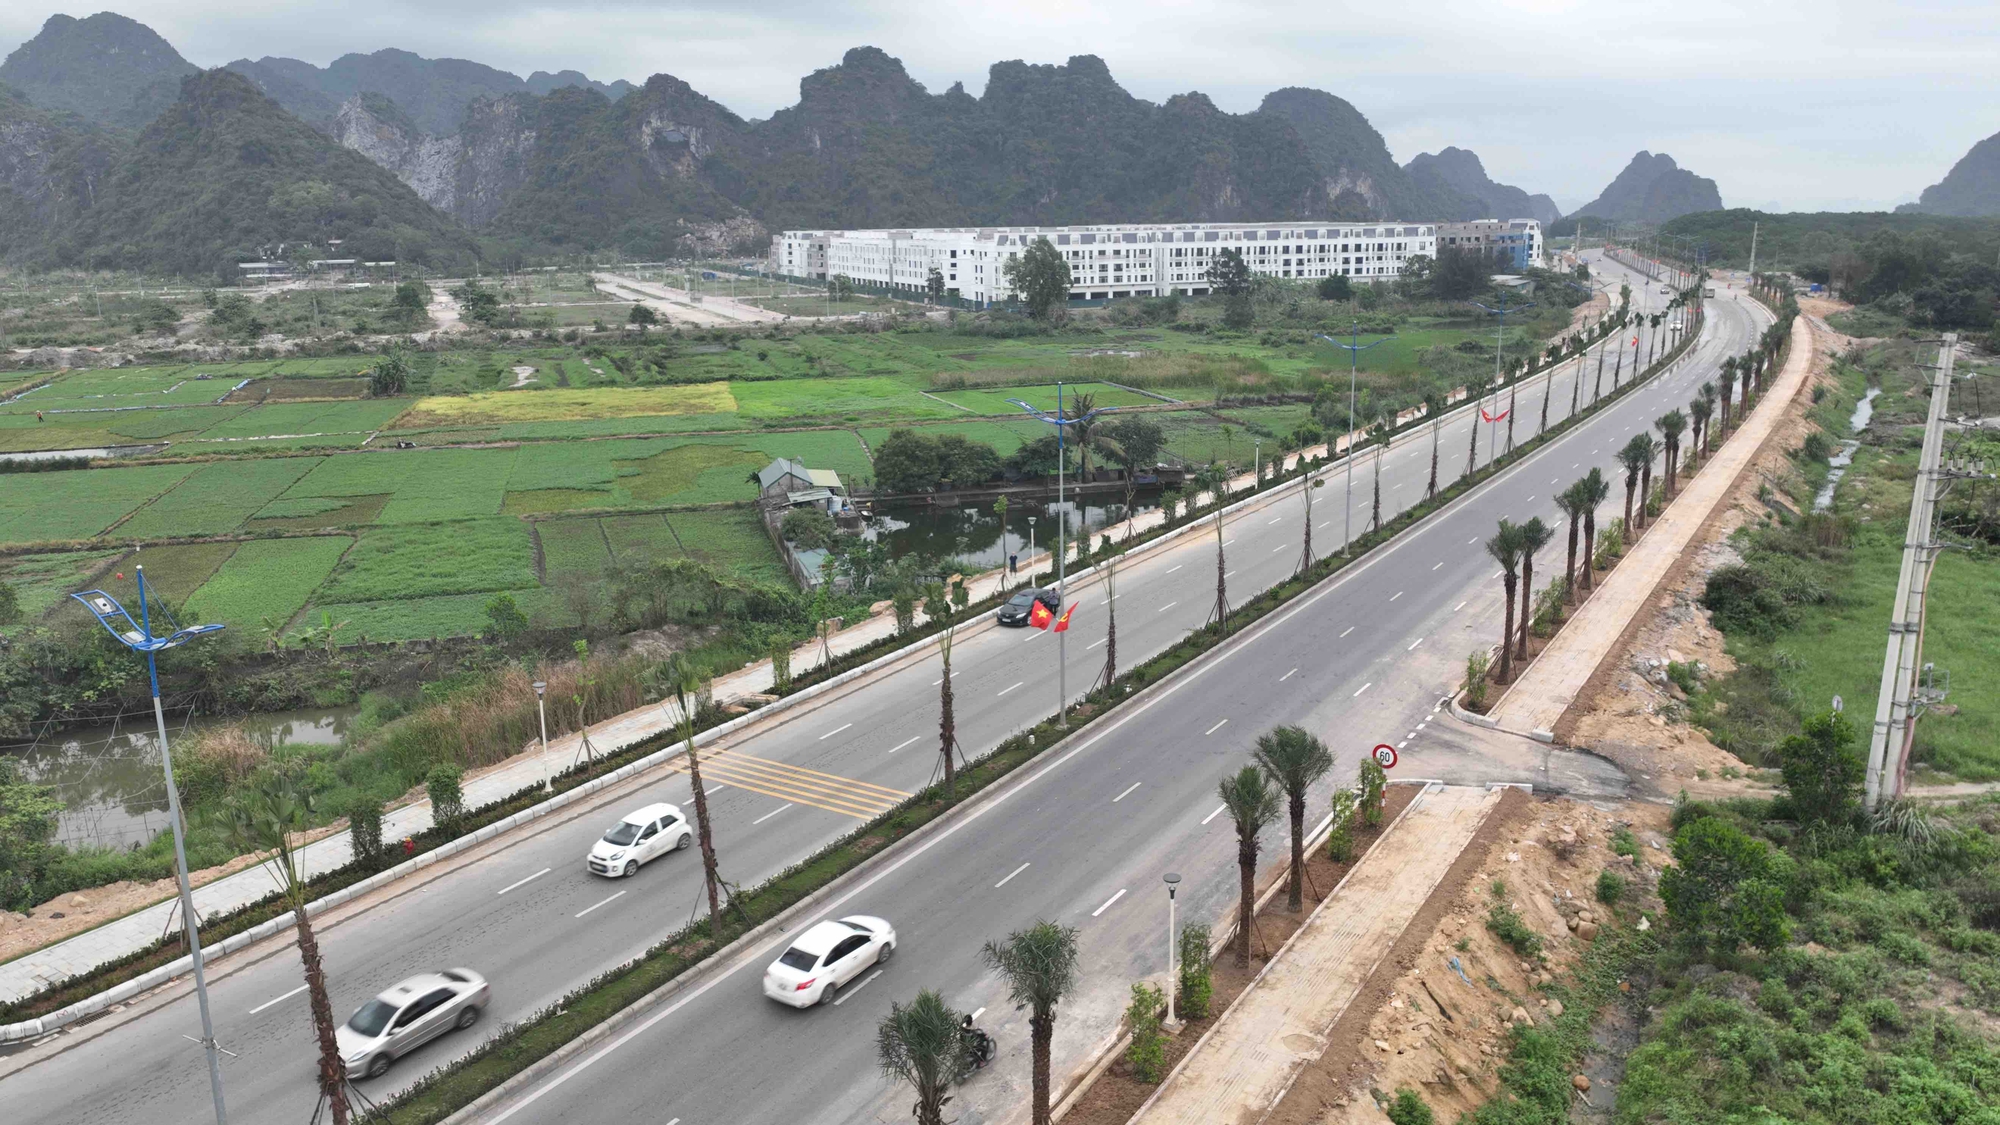 Quảng Ninh lần 2 khánh thành đường bao biển Hạ Long - Cẩm Phả  - Ảnh 3.